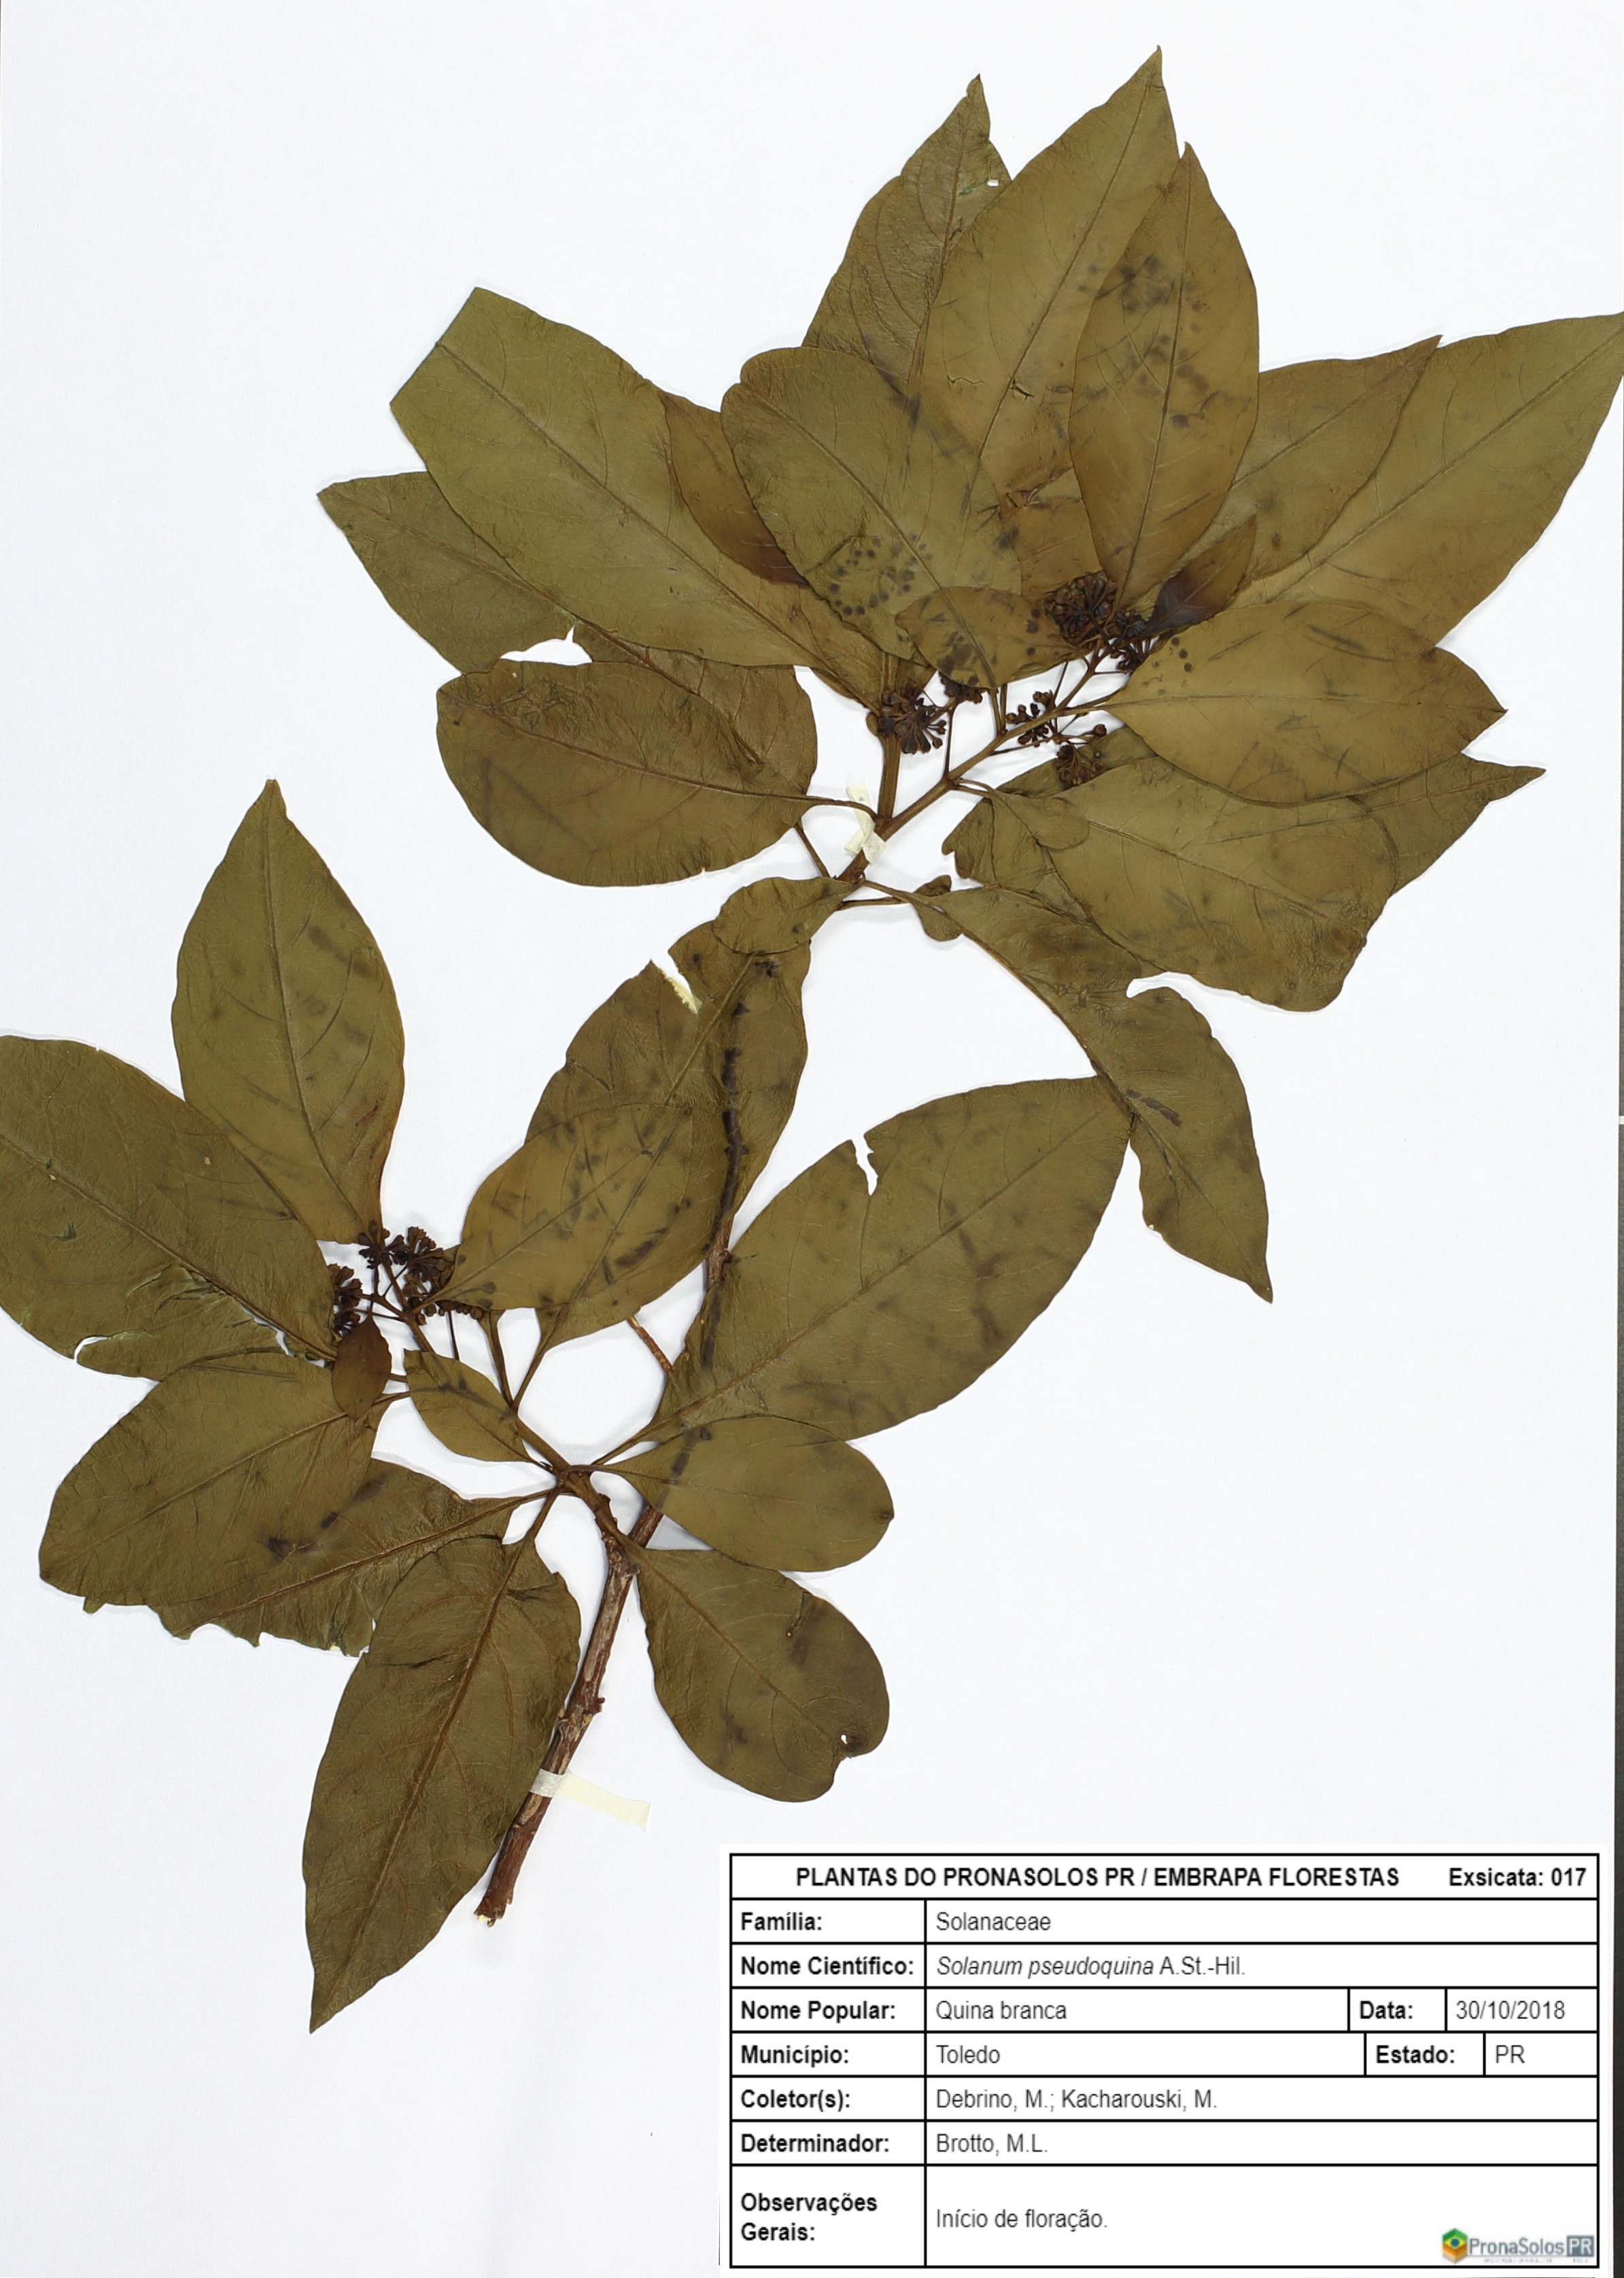 017_Solanum pseudoquina A.St.-Hil.